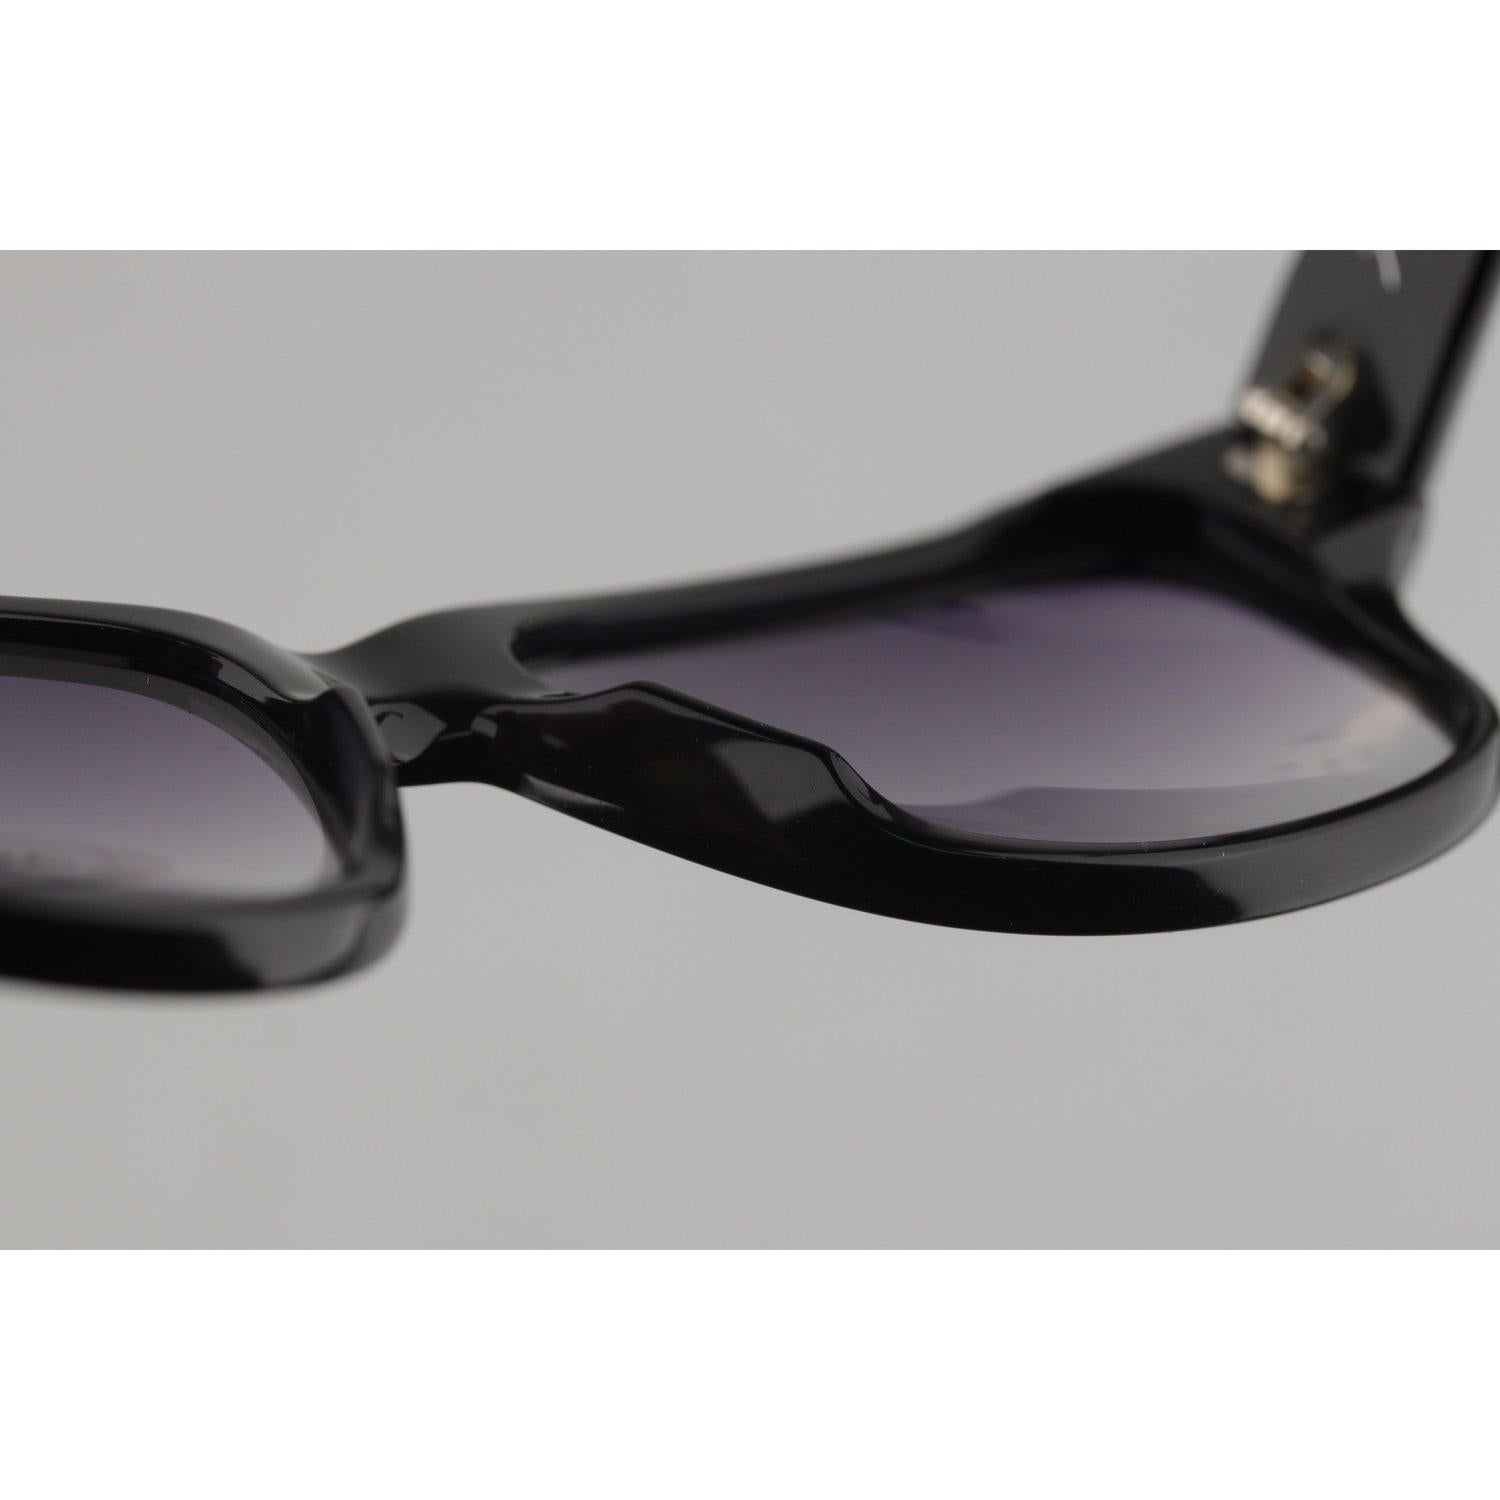 Karl Lagerfeld Vintage Sunglasses Mod 4221 01 4